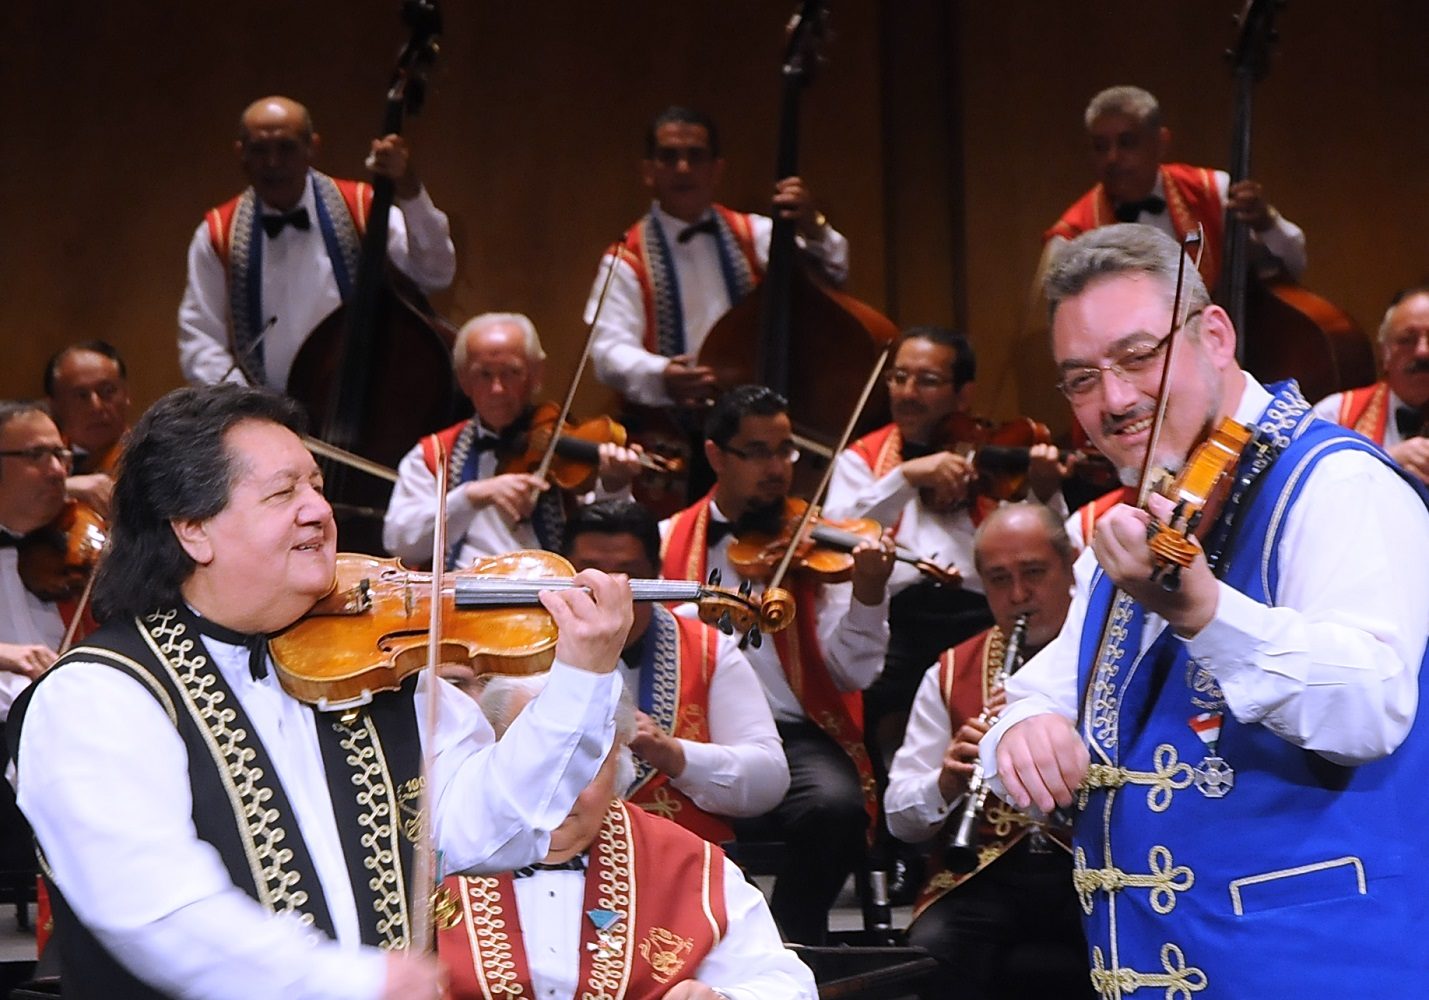 Концерт оркестра «100 скрипок» в Доме музыки – события на сайте «Московские Сезоны»